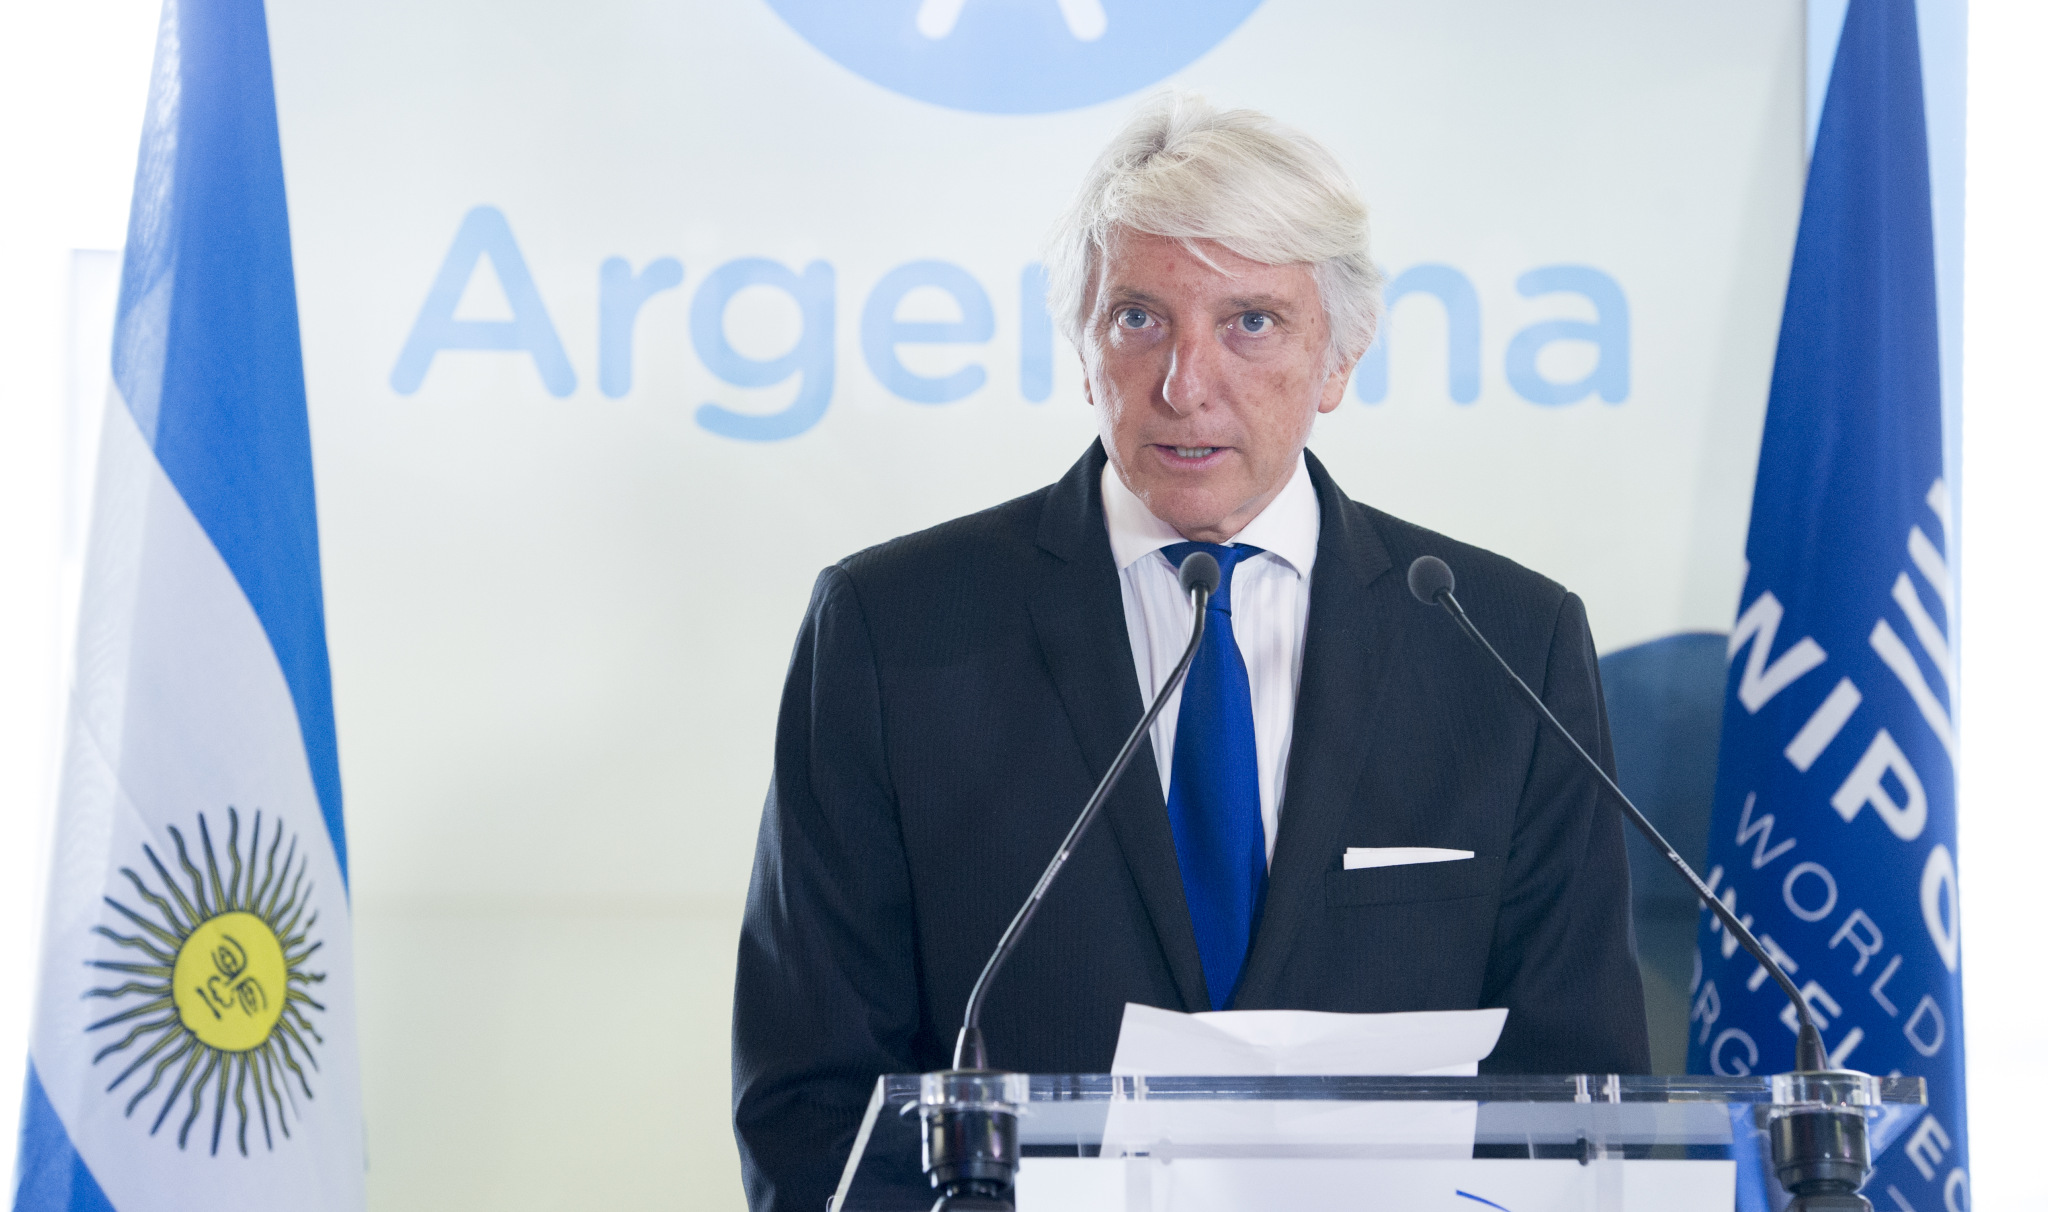 El ministro argentino ‘estaba borracho’ cuando acordó el polémico acuerdo sobre las Malvinas con el Reino Unido